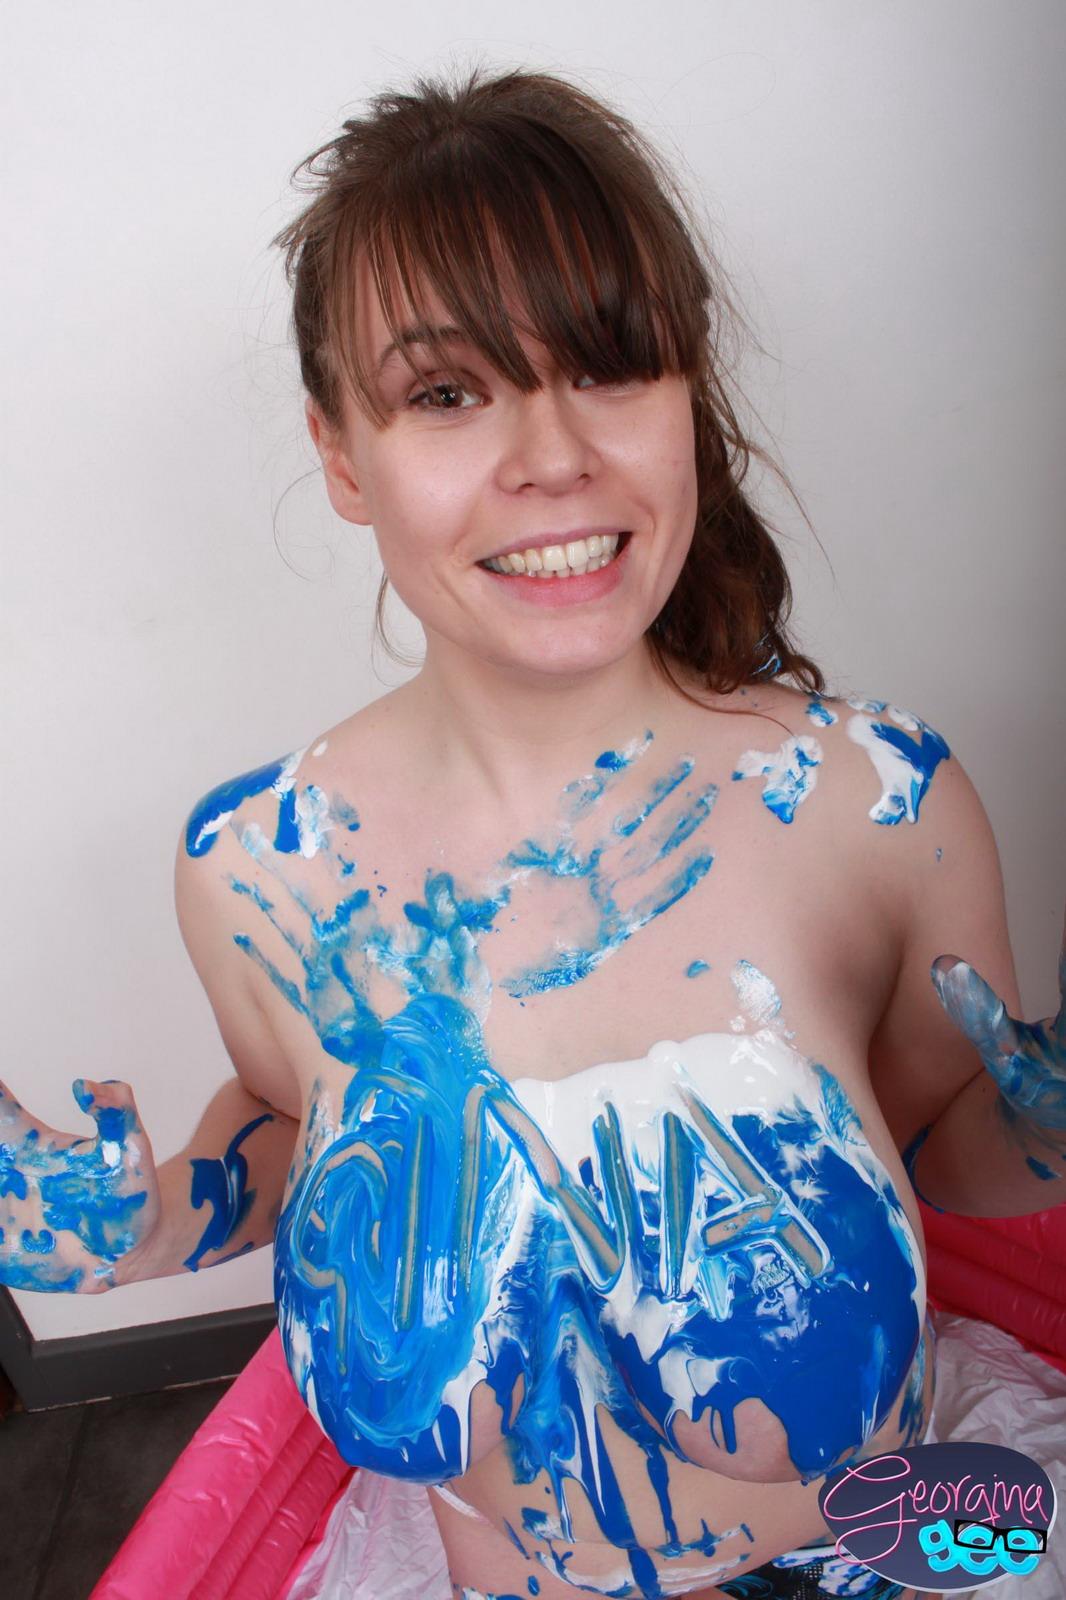 La chica con curvas georgina gee ensucia sus enormes tetas con pintura azul
 #54474077